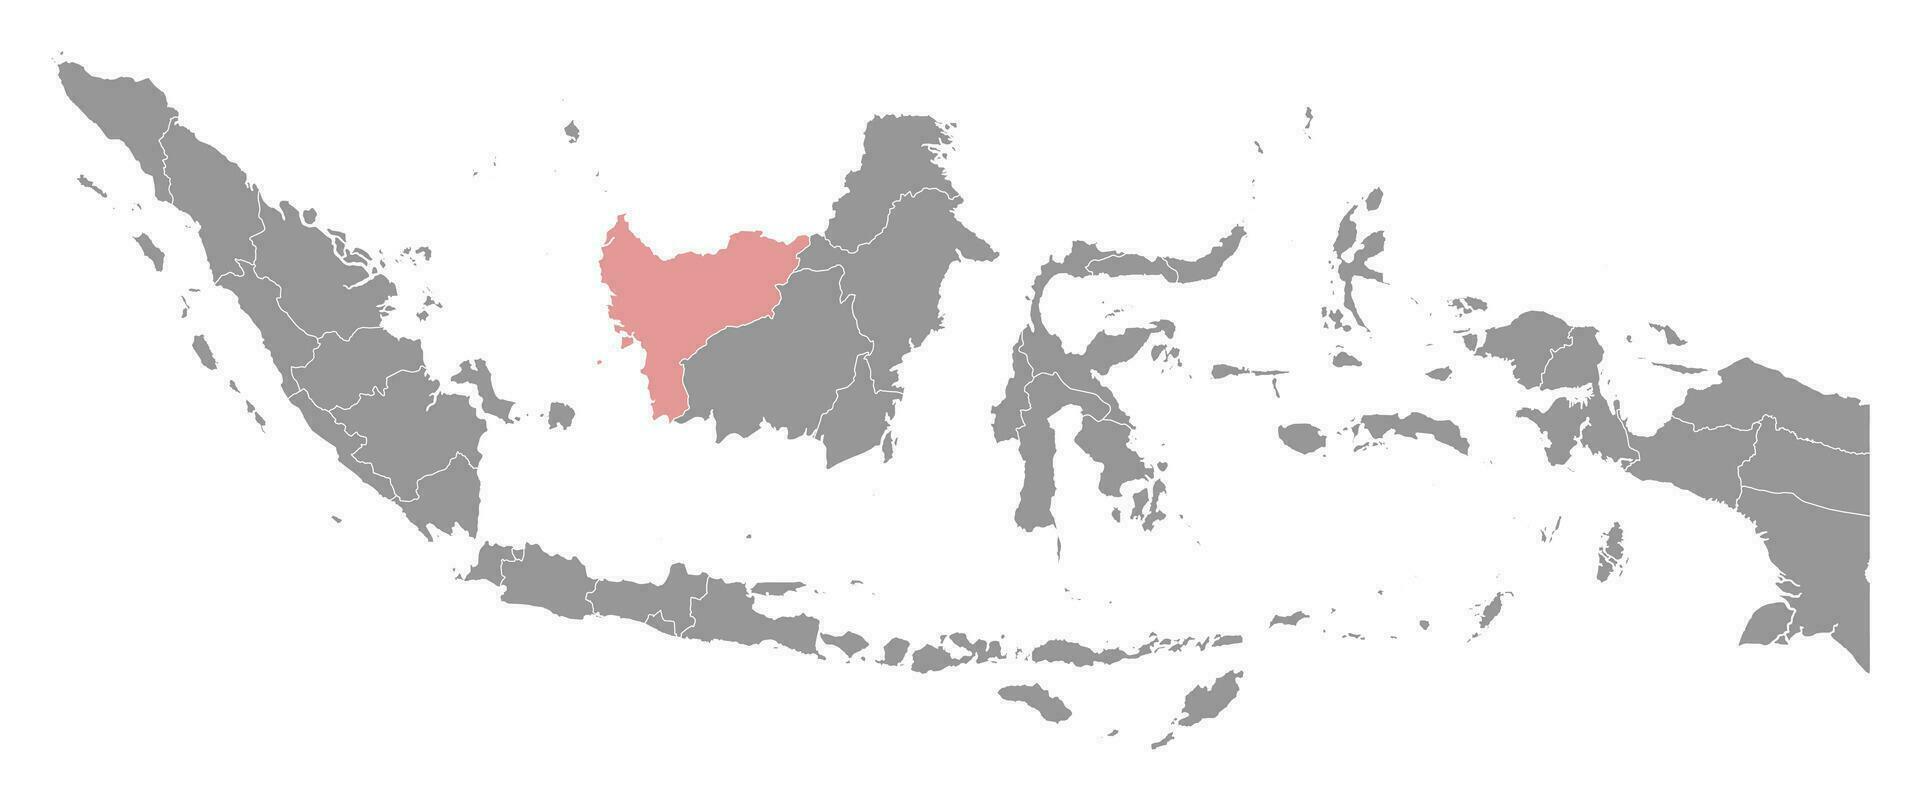 west Kalimantan provincie kaart, administratief divisie van Indonesië. vector illustratie.